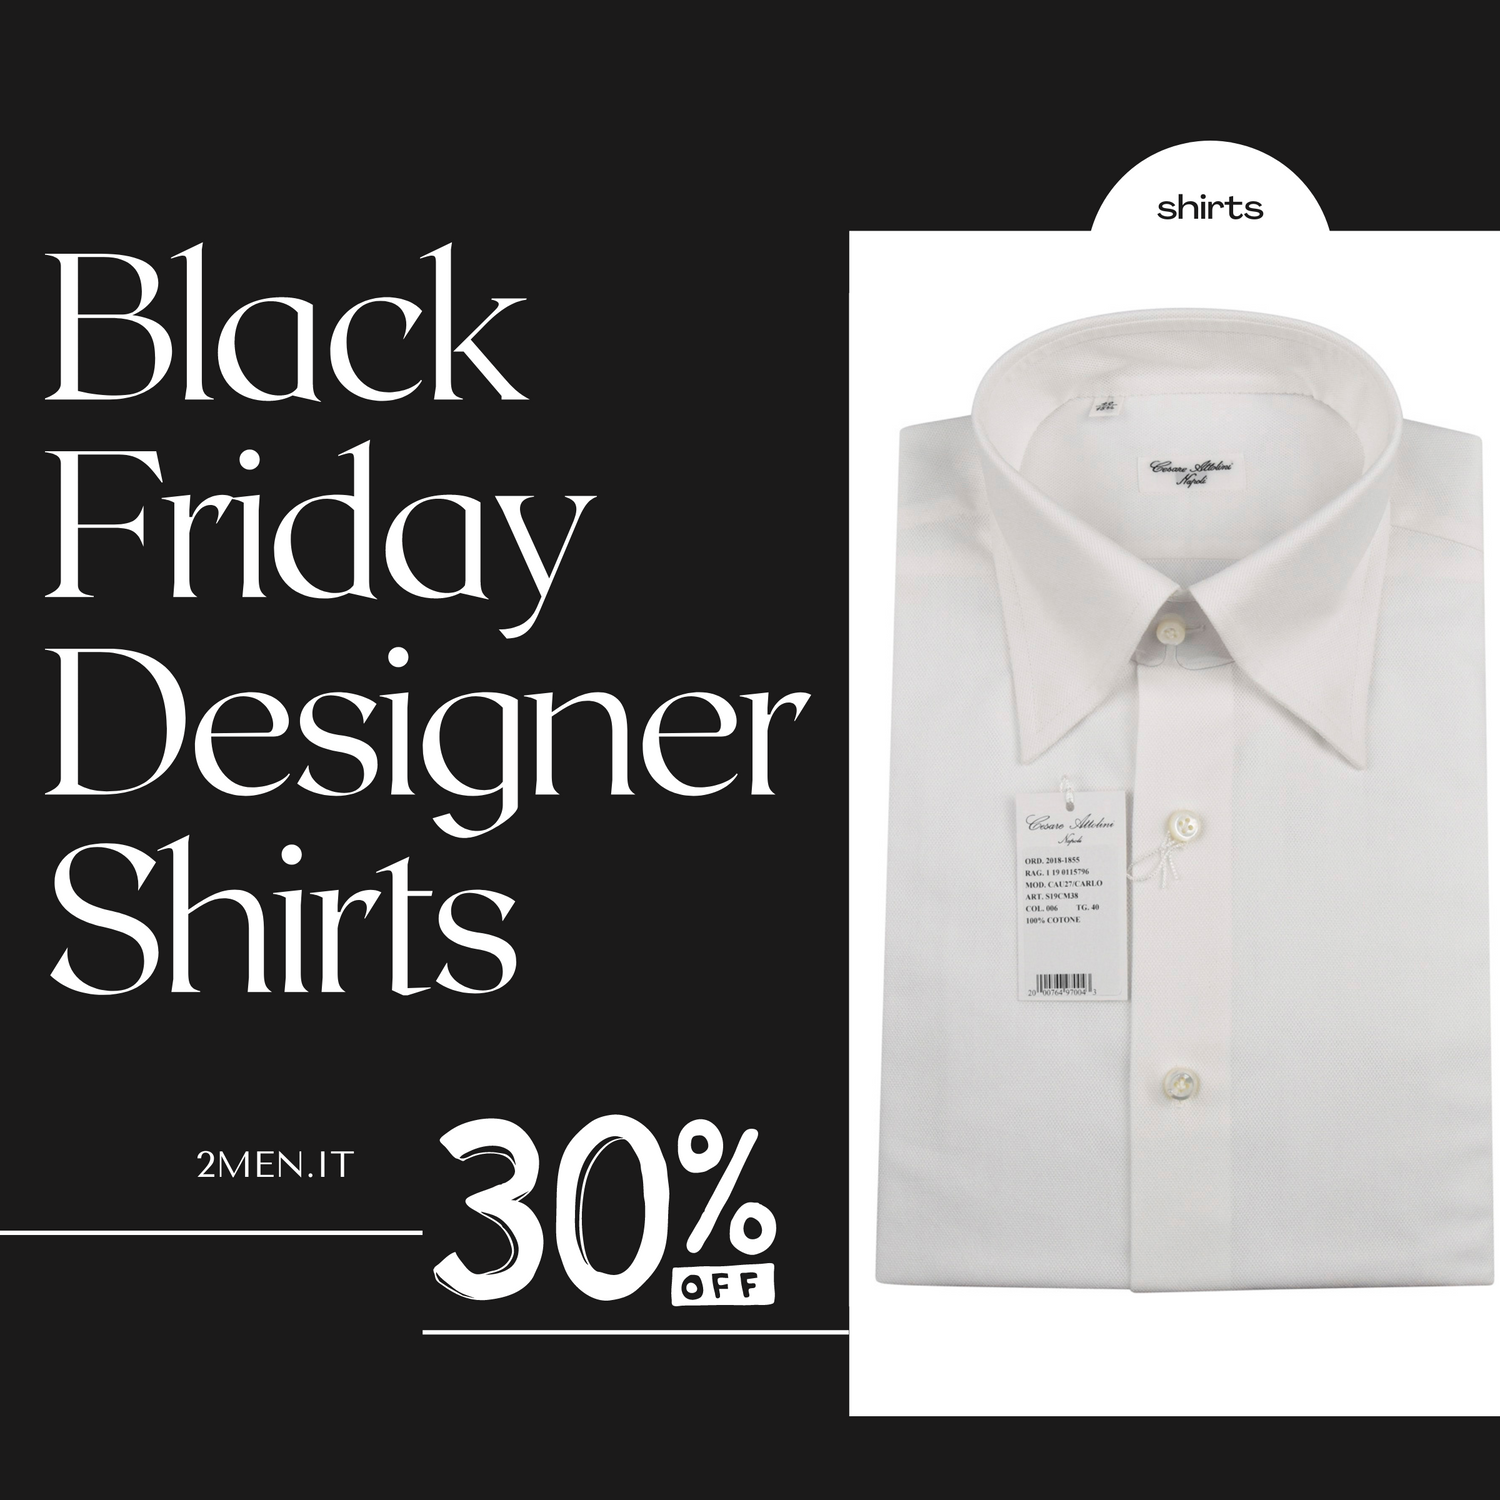 Black Friday Italian Designer shirts